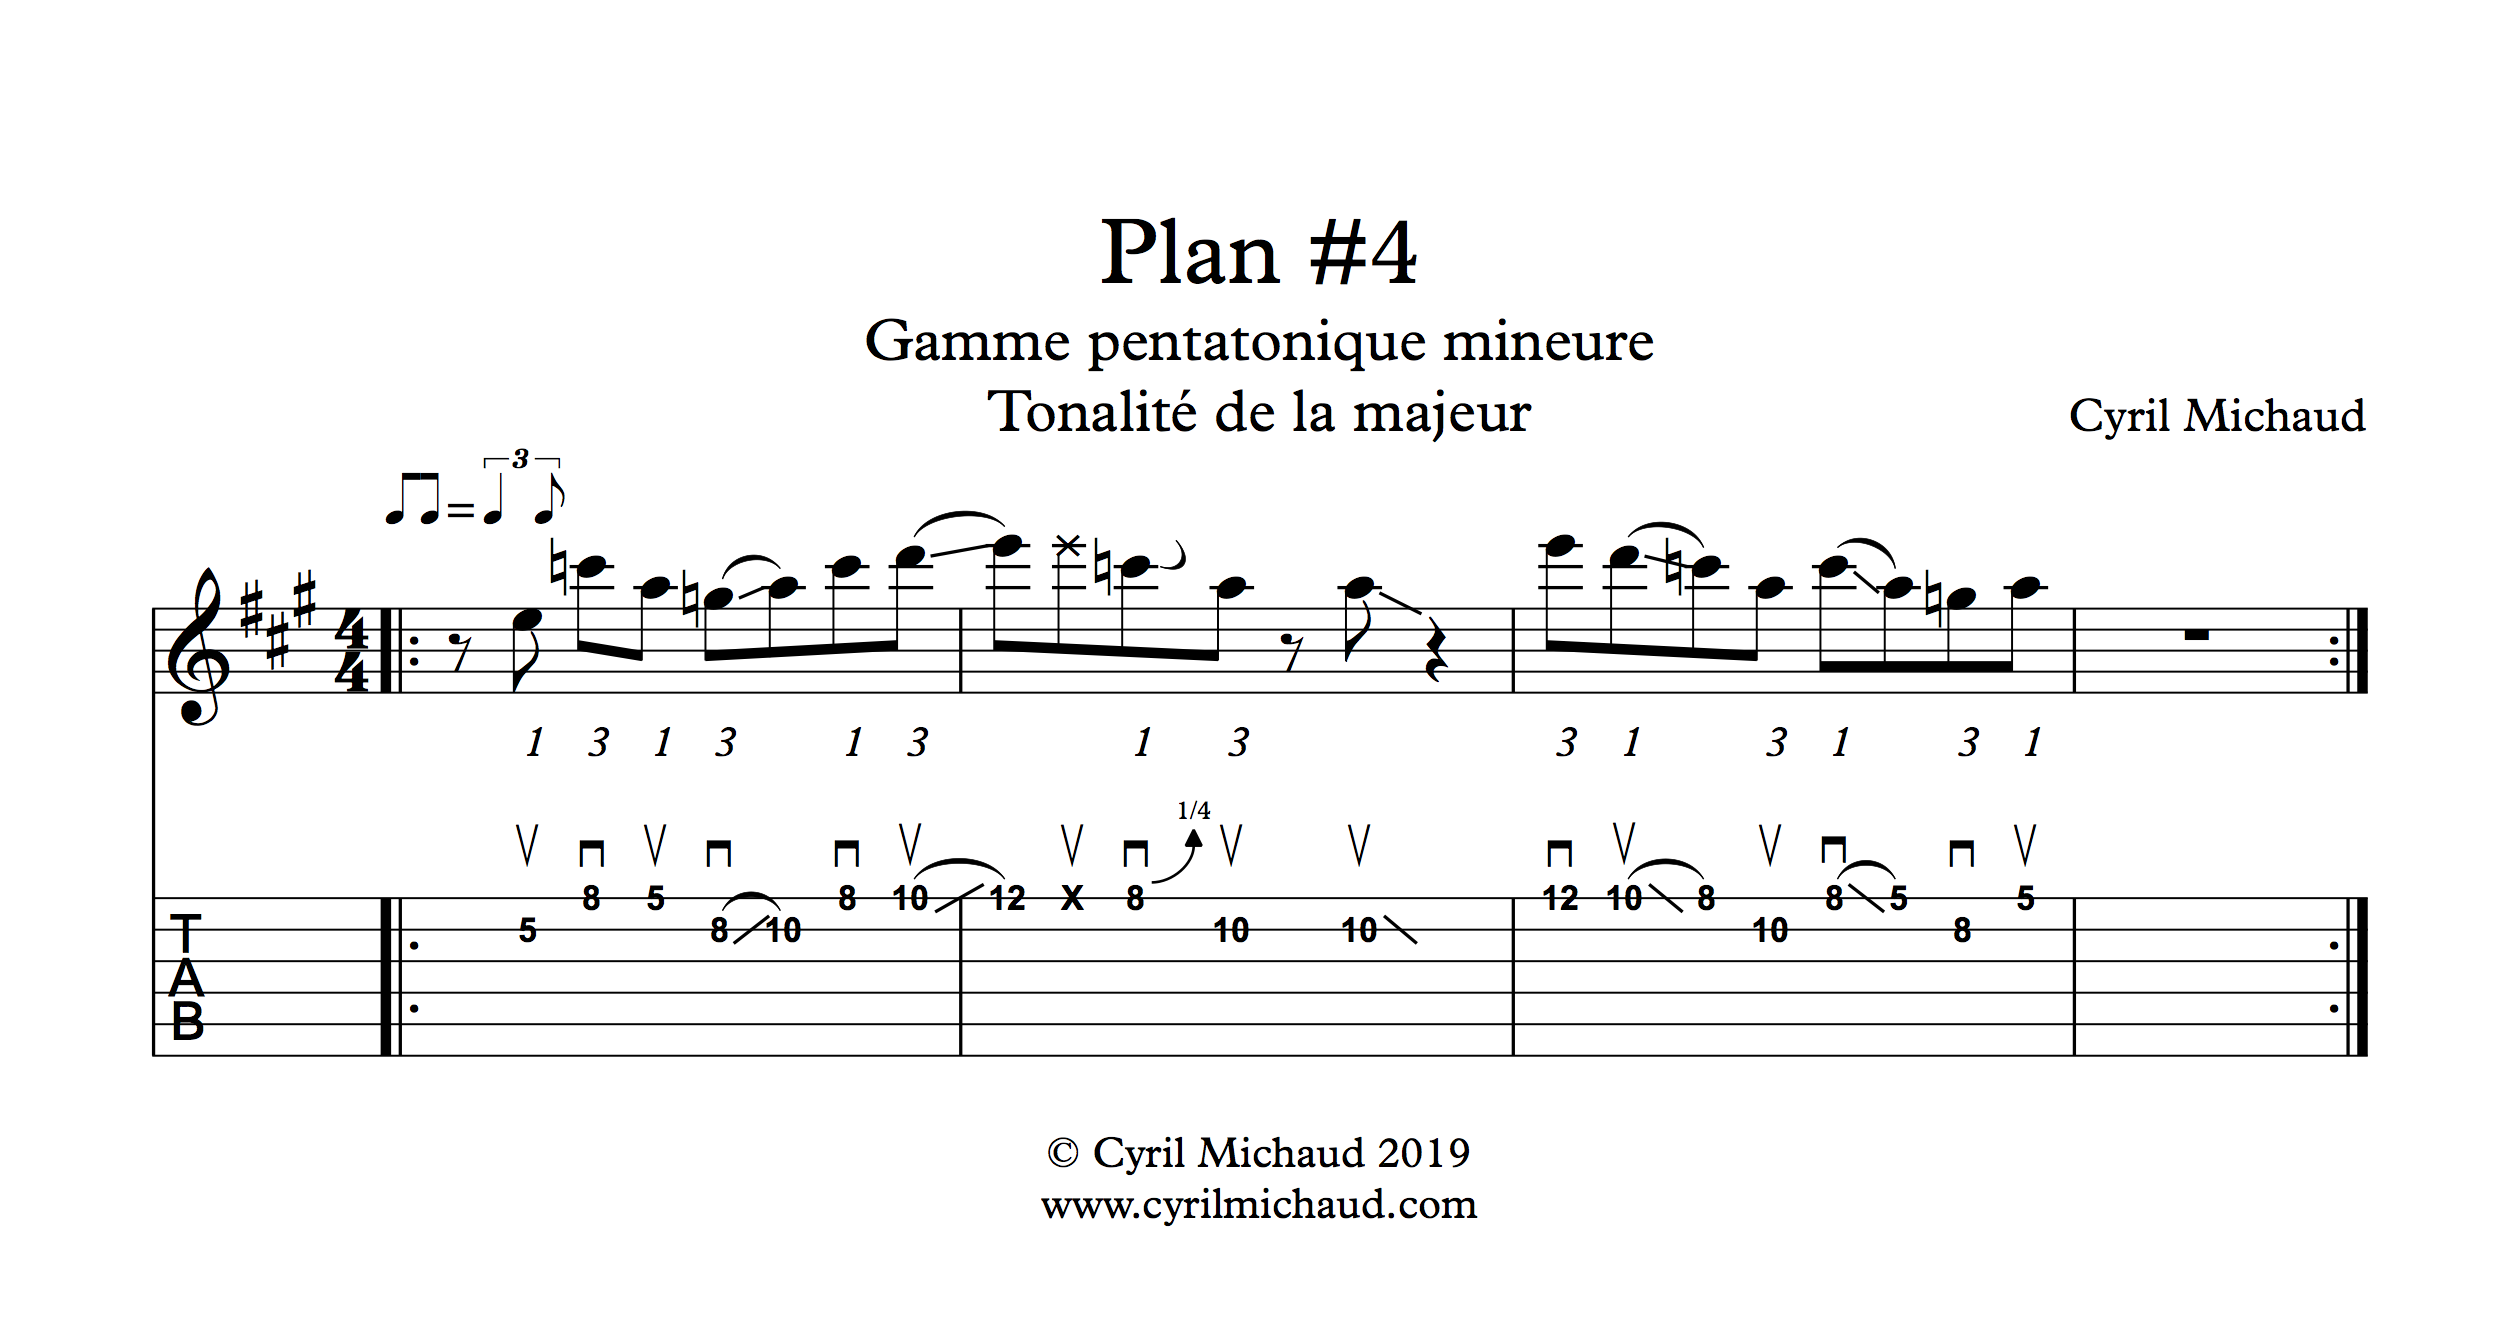 Plan blues sur la gamme pentatonique mineure (4)